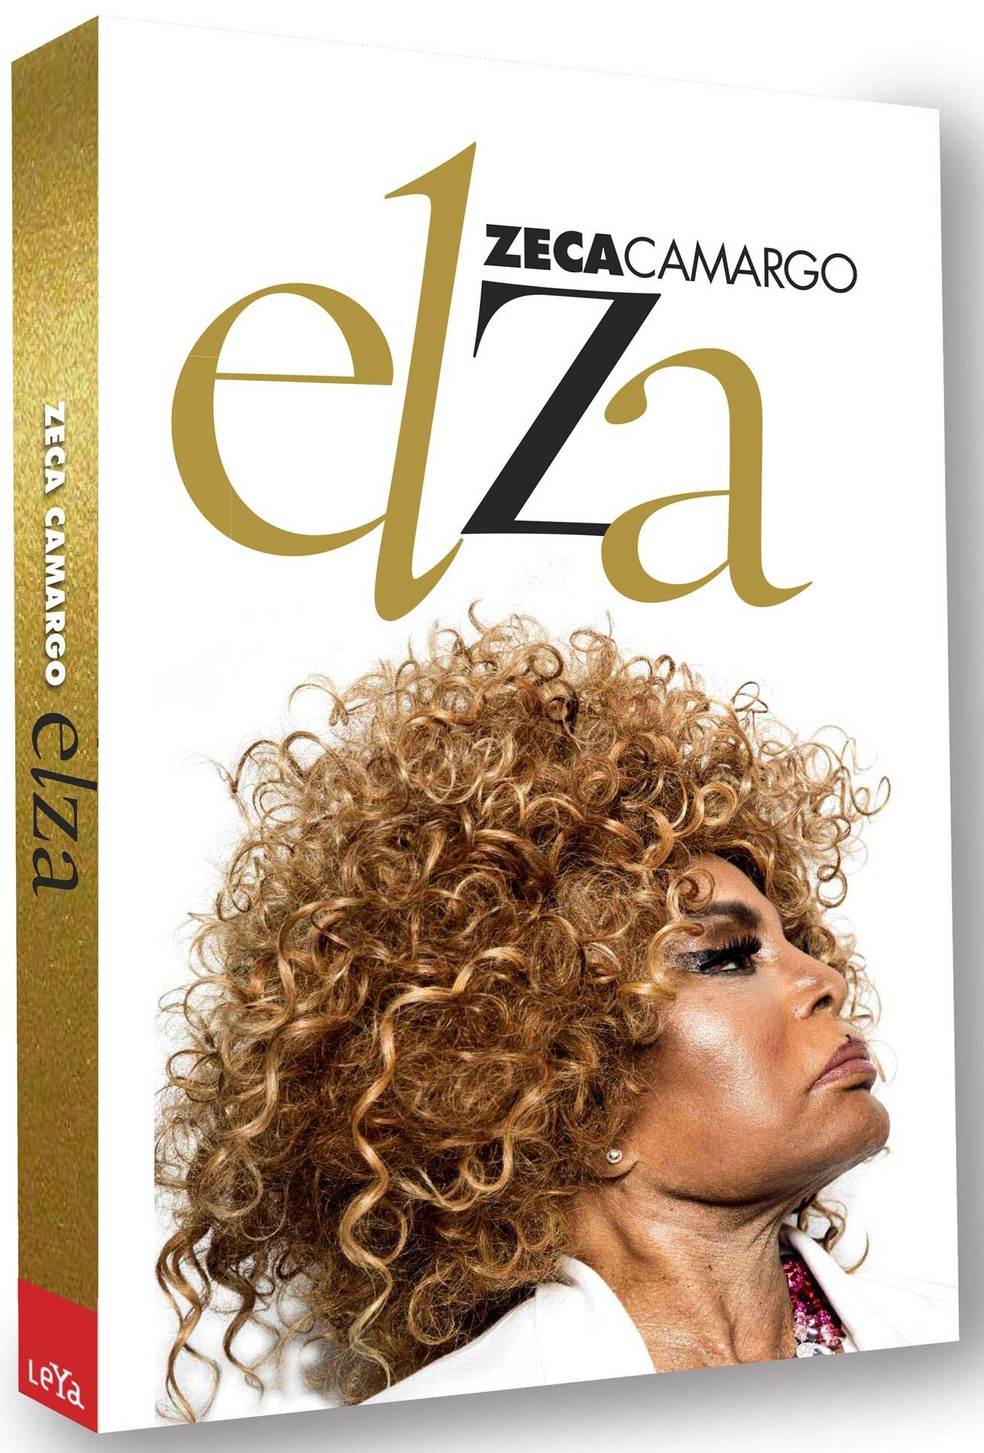 Capa do livro 'Elza', de Zeca Camargo — Foto: Arte gráfica de Victor Burton